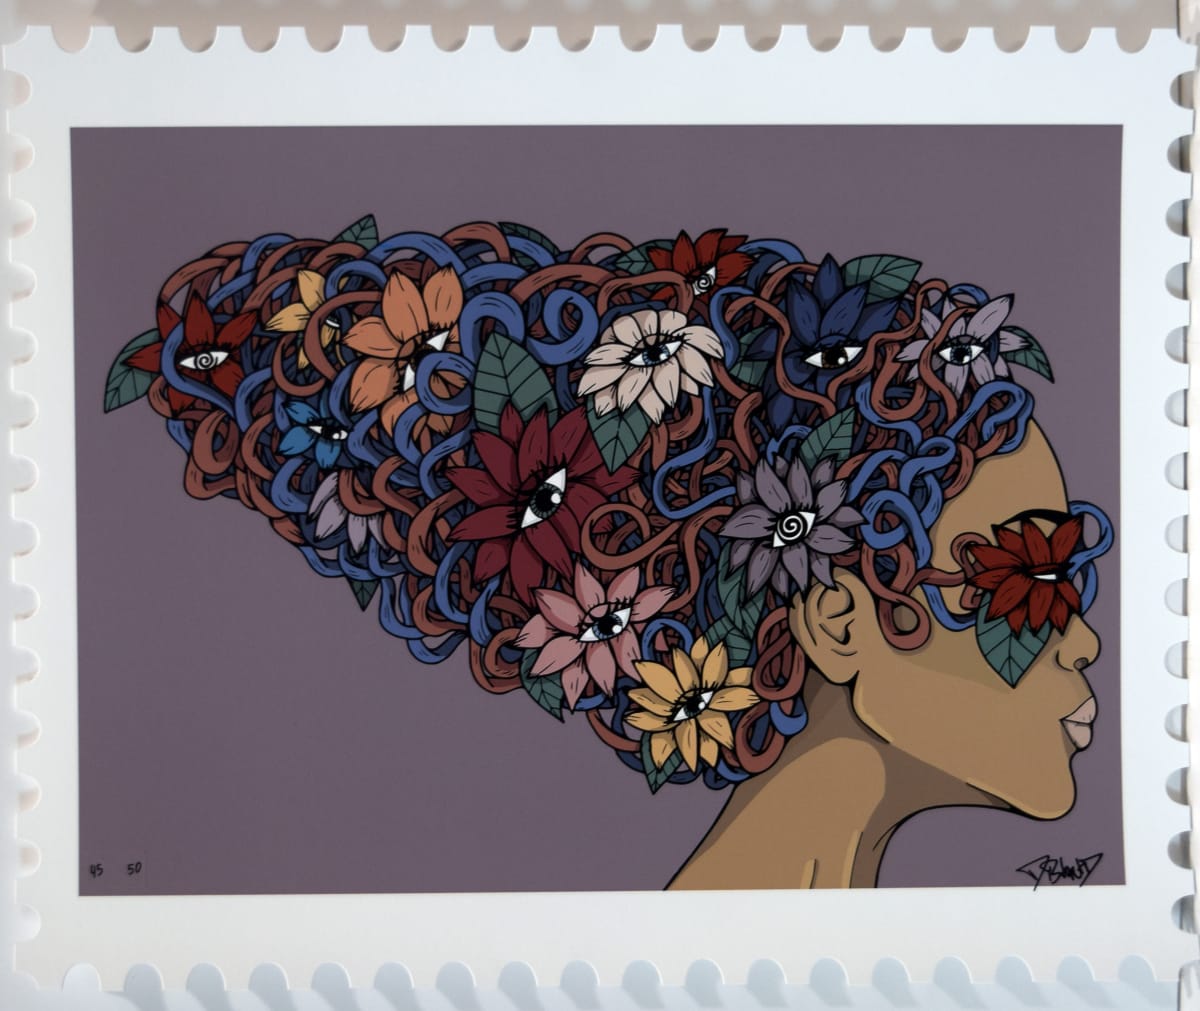 Flowerhead by Anhia "Distortedd" Zaria Santana  Image: Black History Month 2021